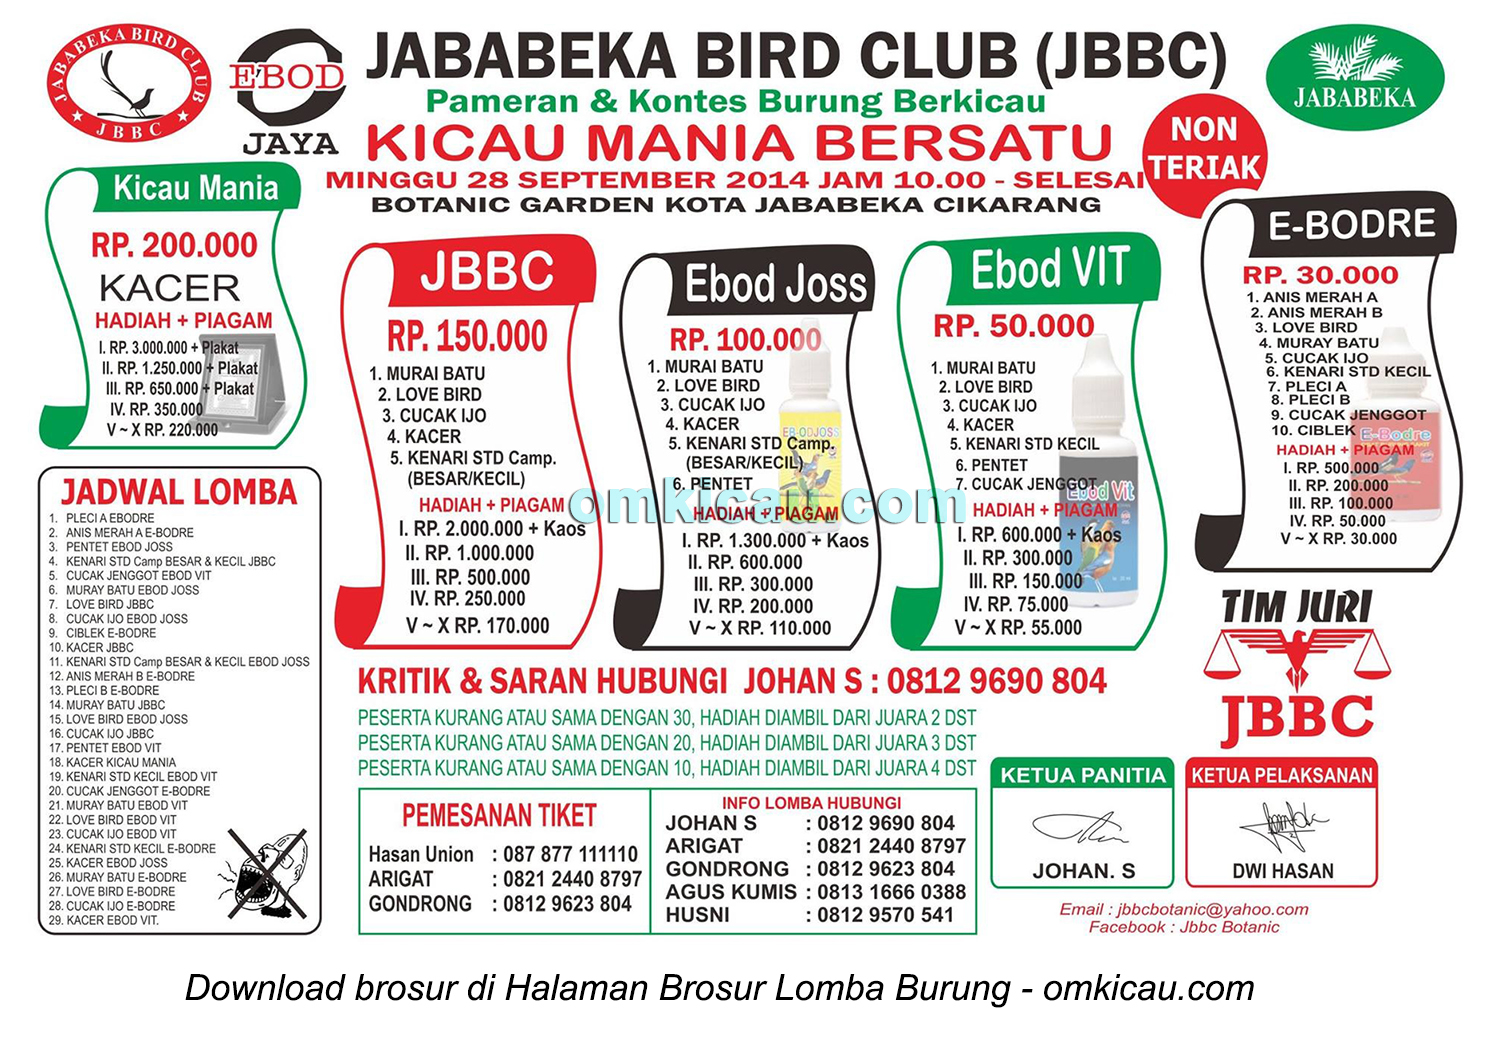 Brosur Lomba Burung Berkicau Jababeka BC, Bekasi, 28 September 2014